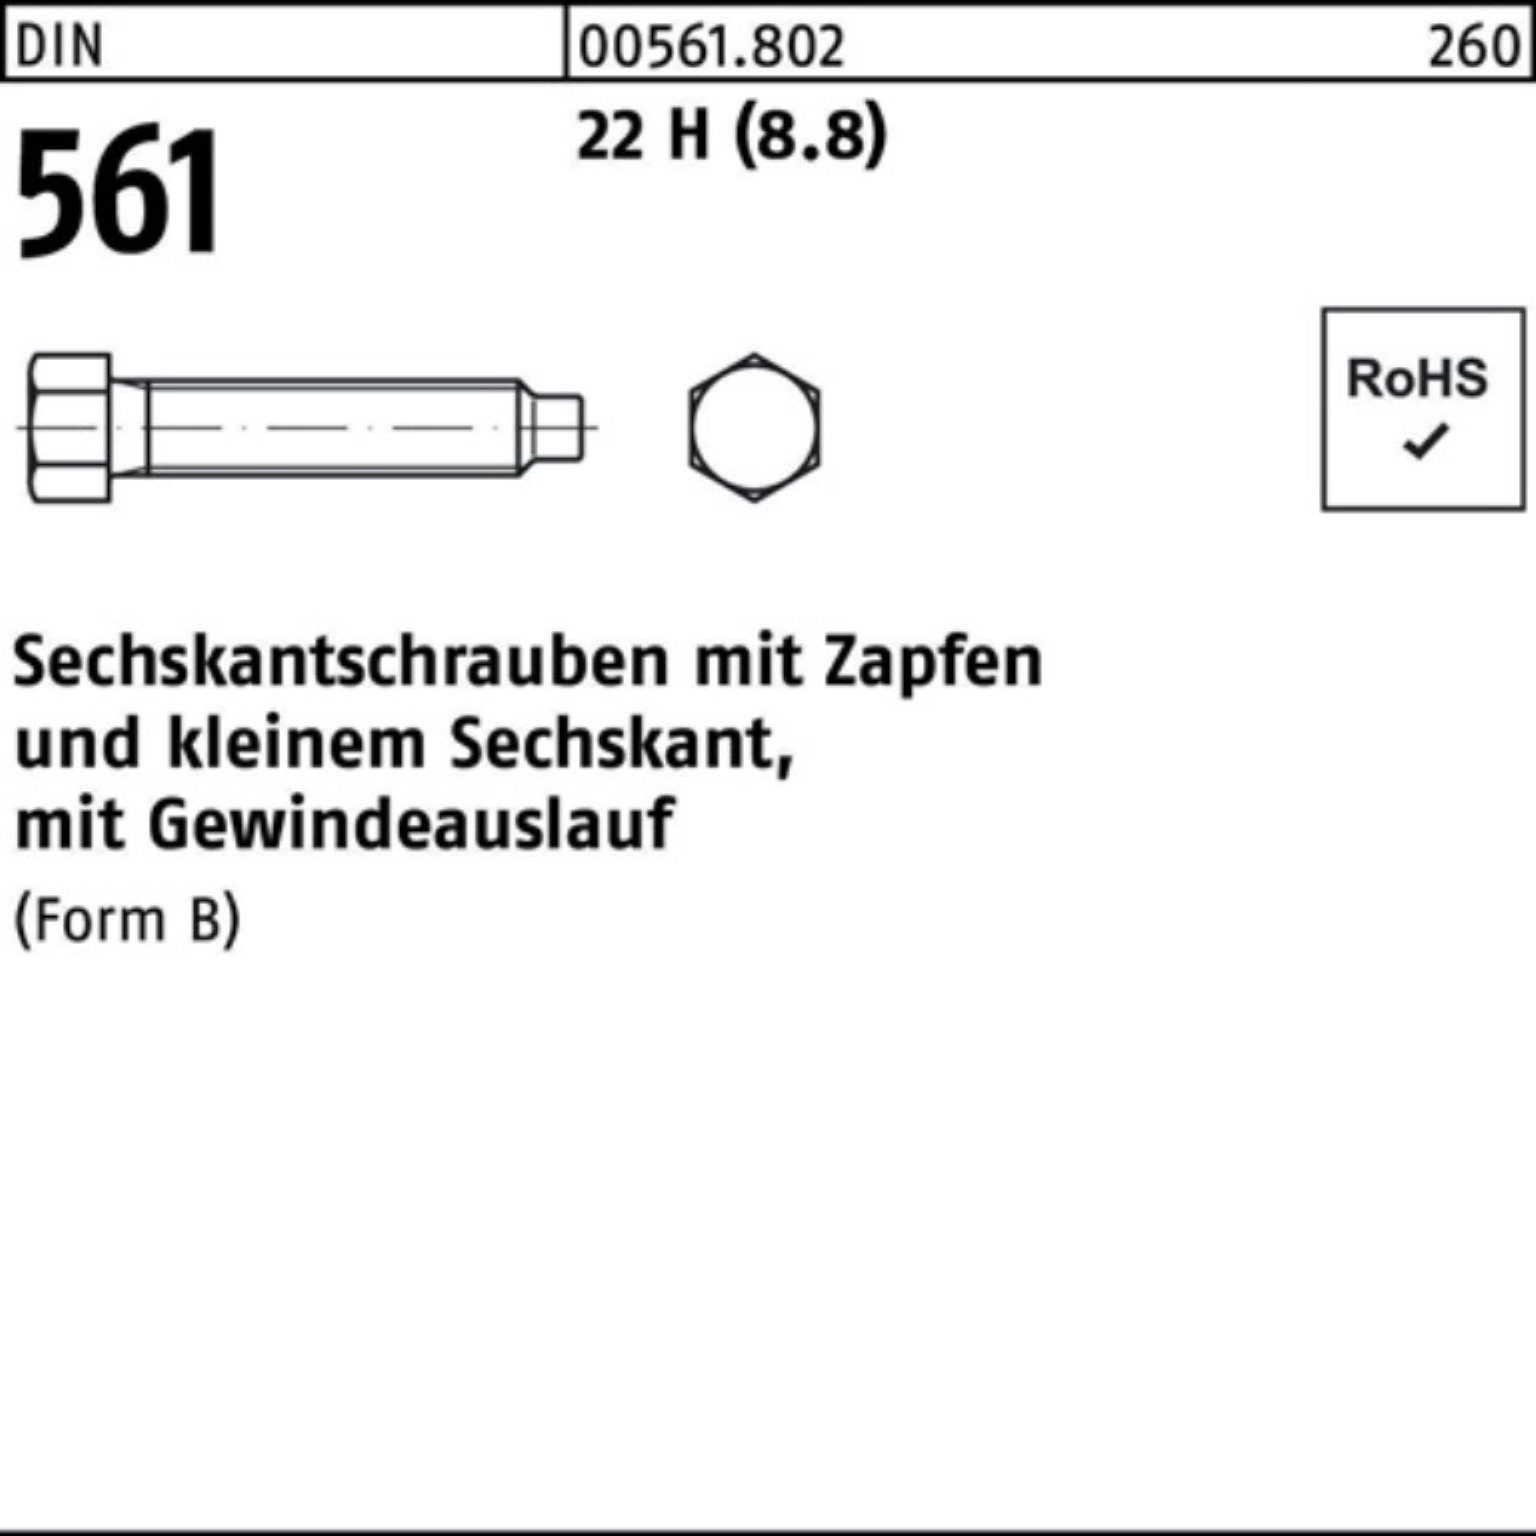 Reyher Sechskantschraube 100er Pack (8.8) 90 H 561 St 10 Zapfen Sechskantschraube 22 DIN BM 16x